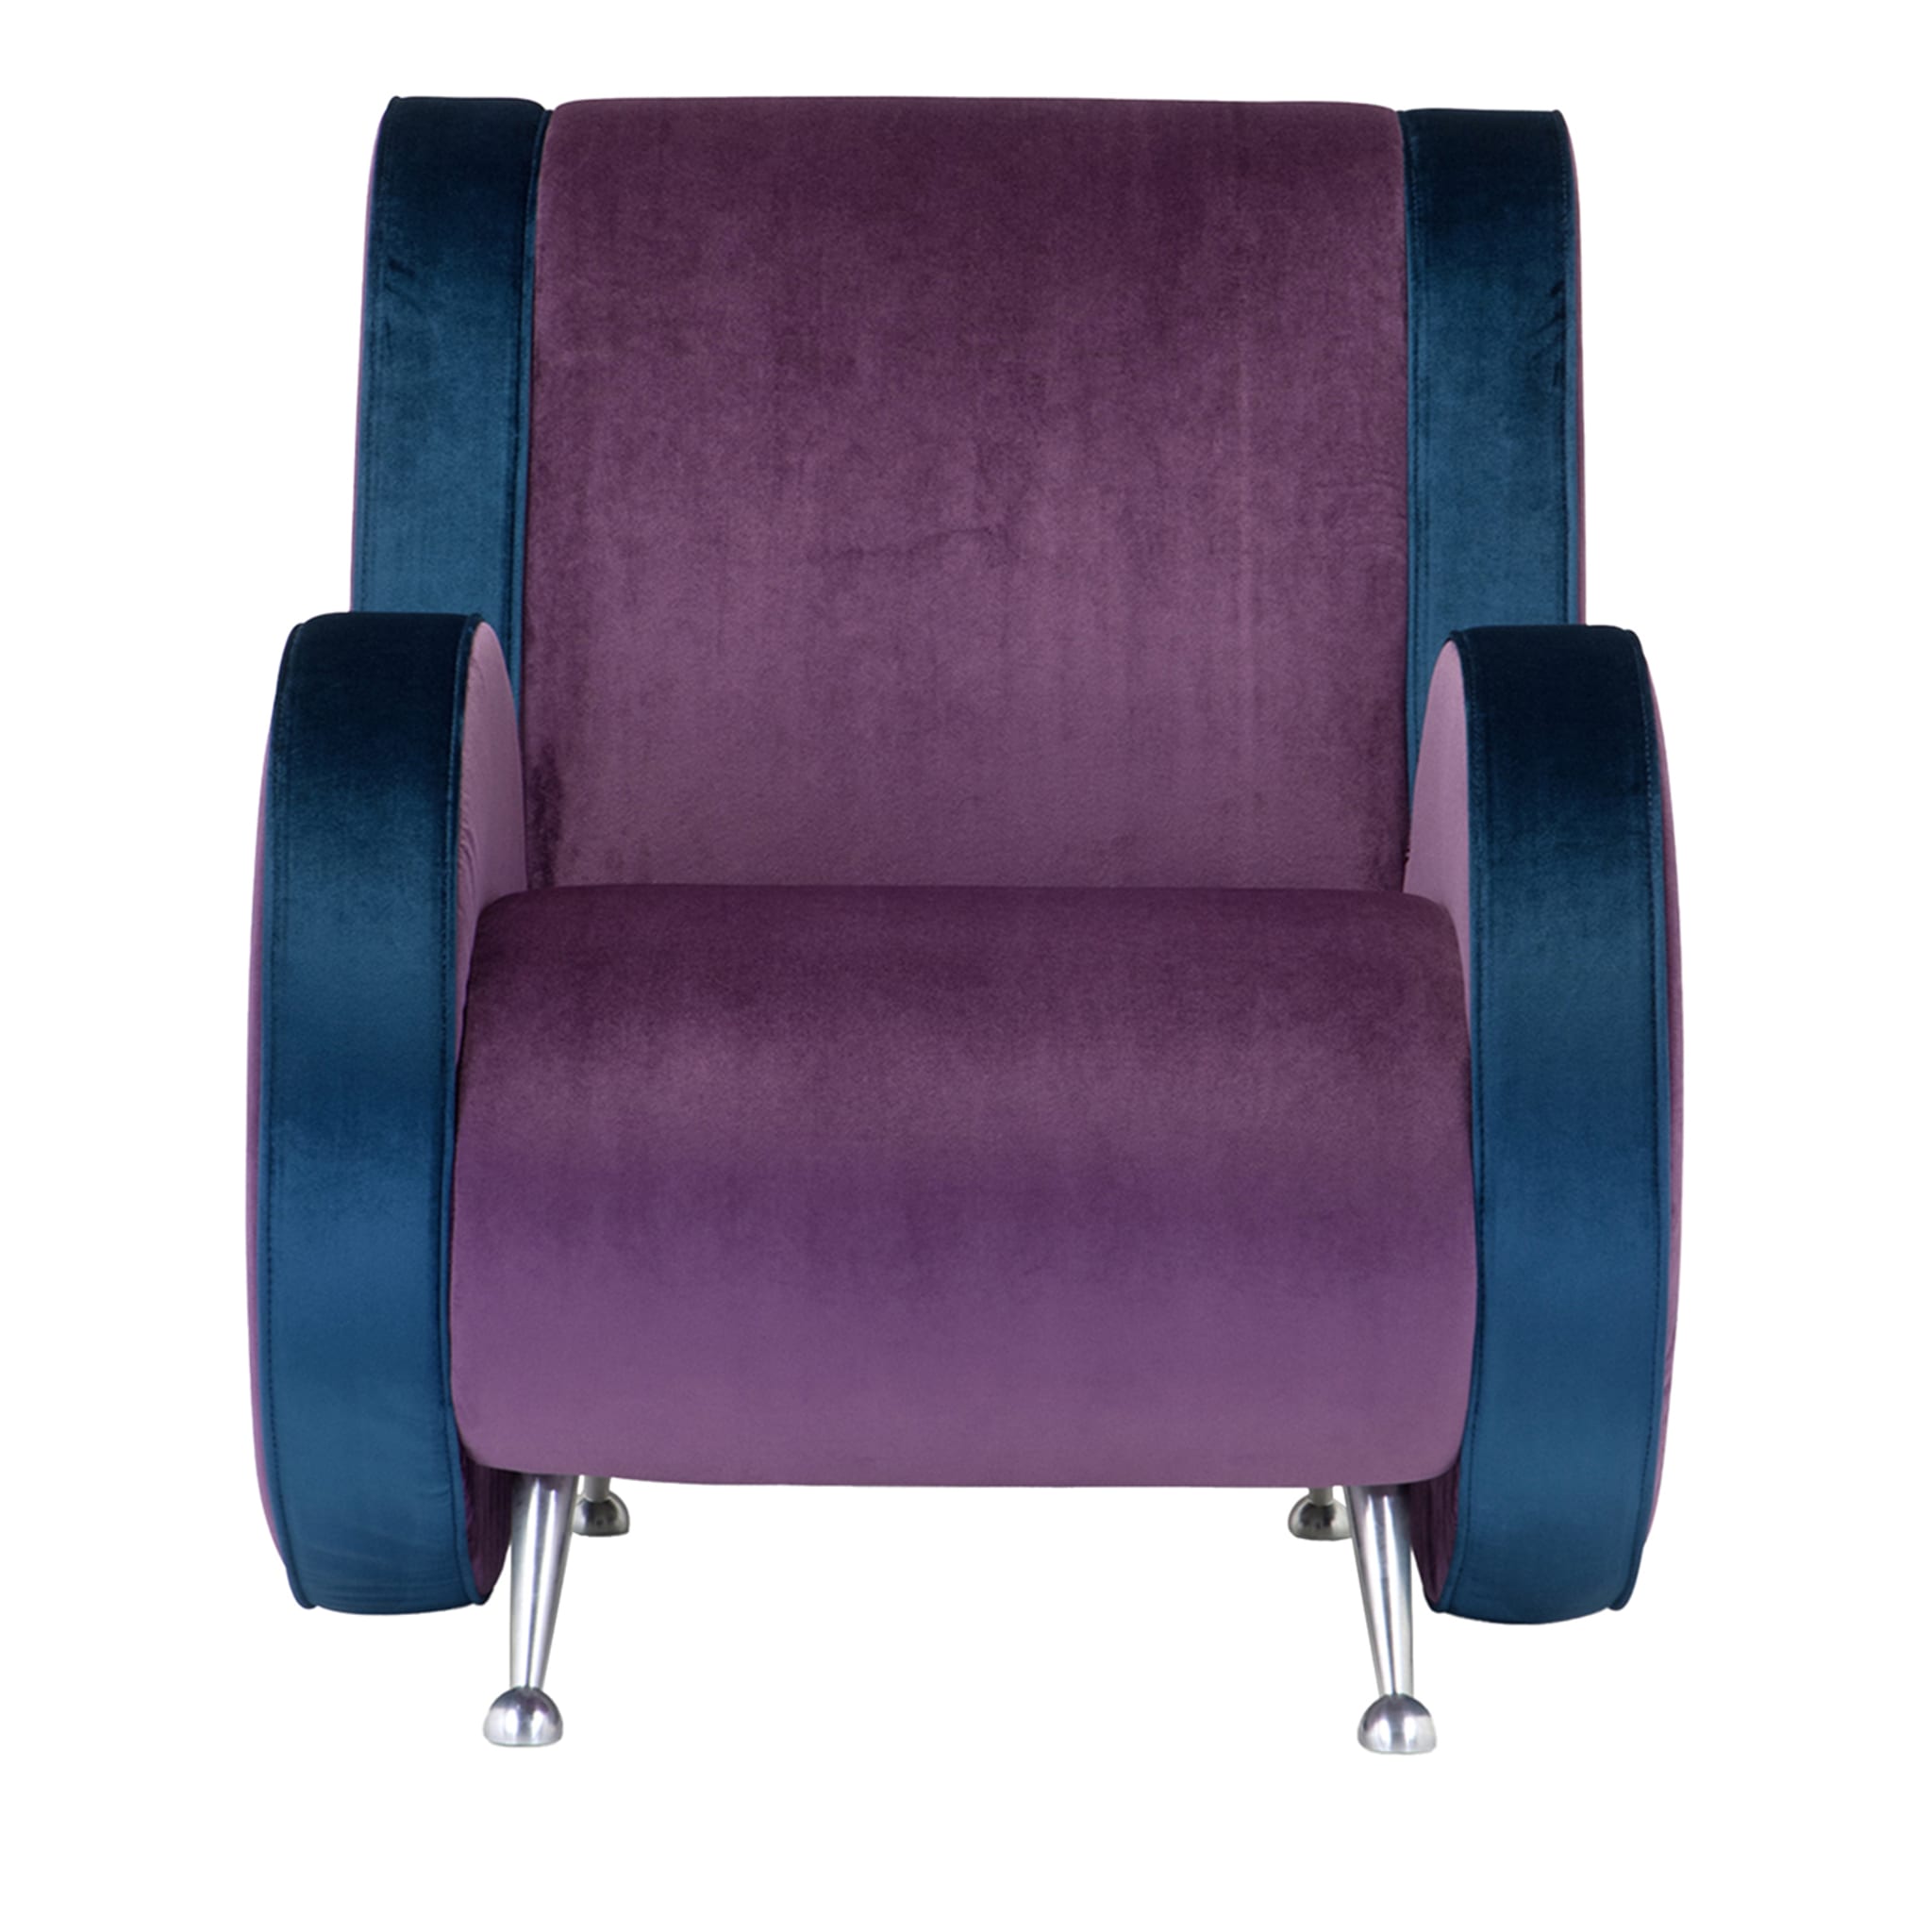 Ata Blue & Purple Armchair by Simone Micheli - Main view